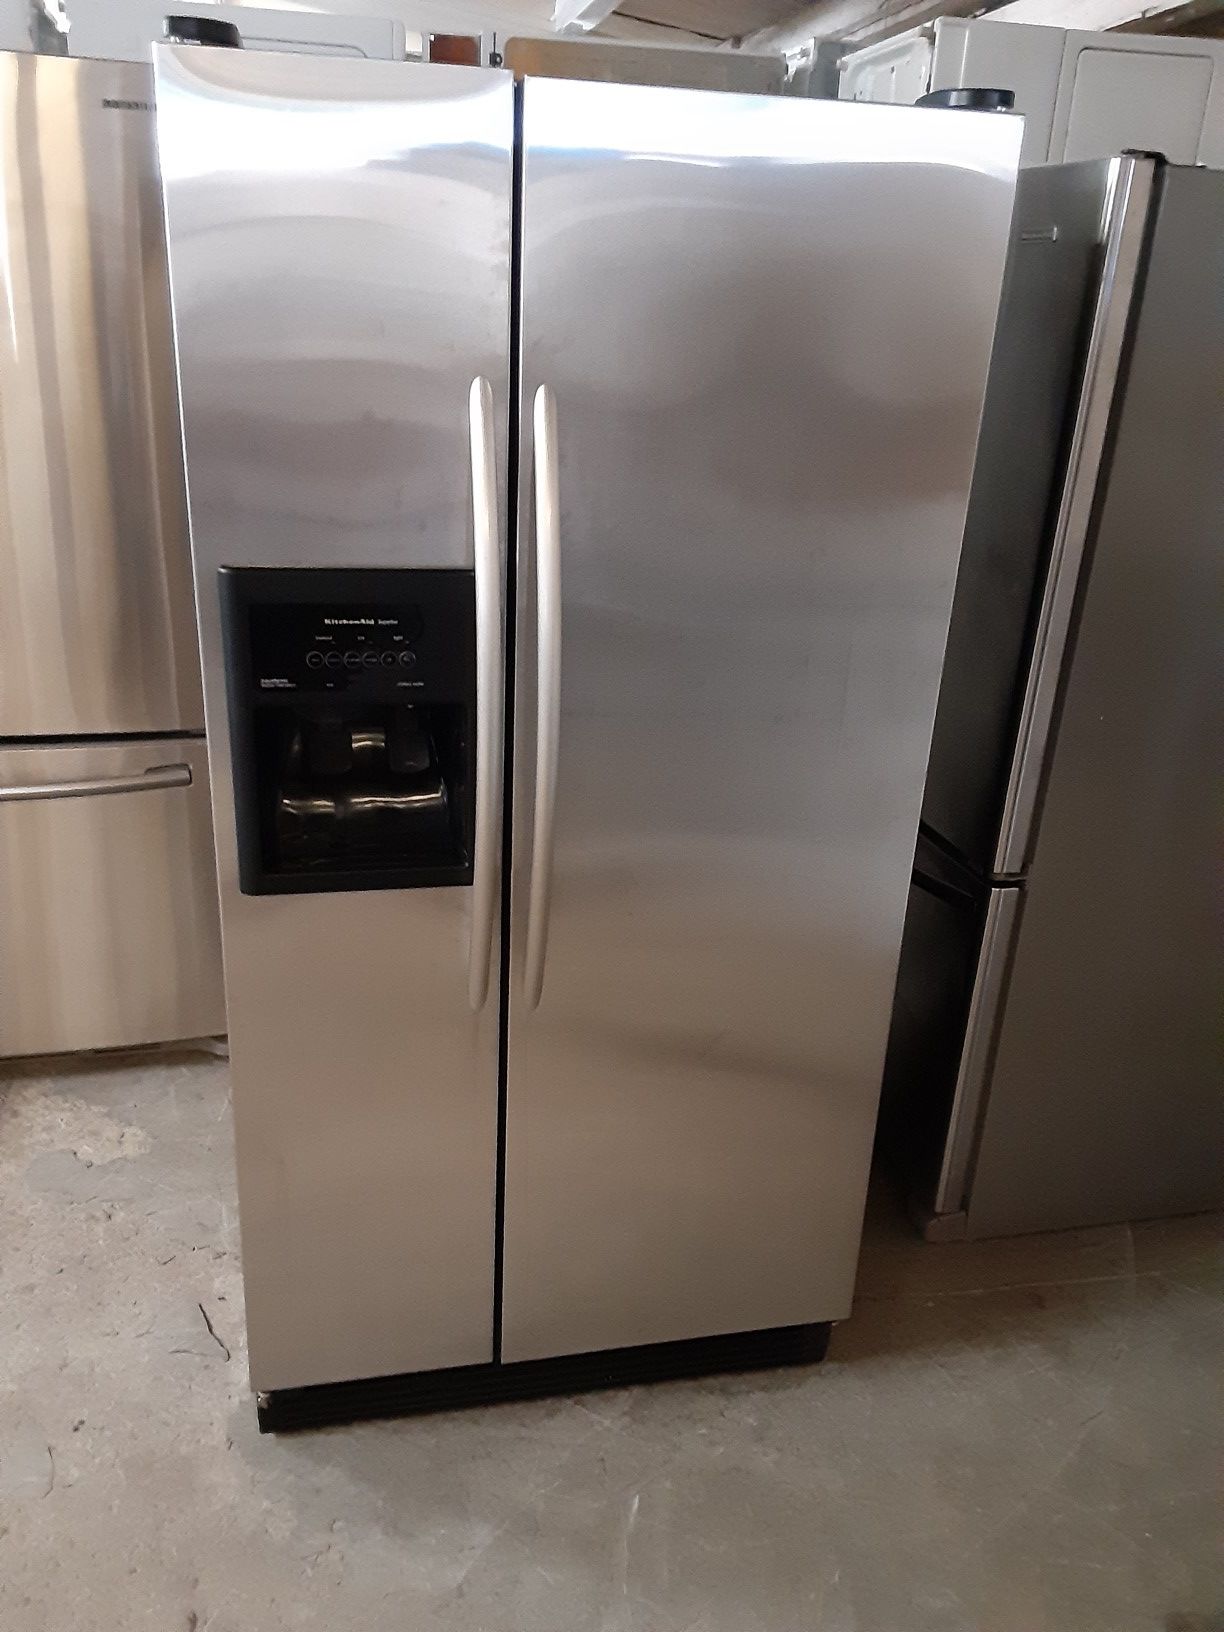 Refrigerator kitchen Aid good condition 3 months warranty